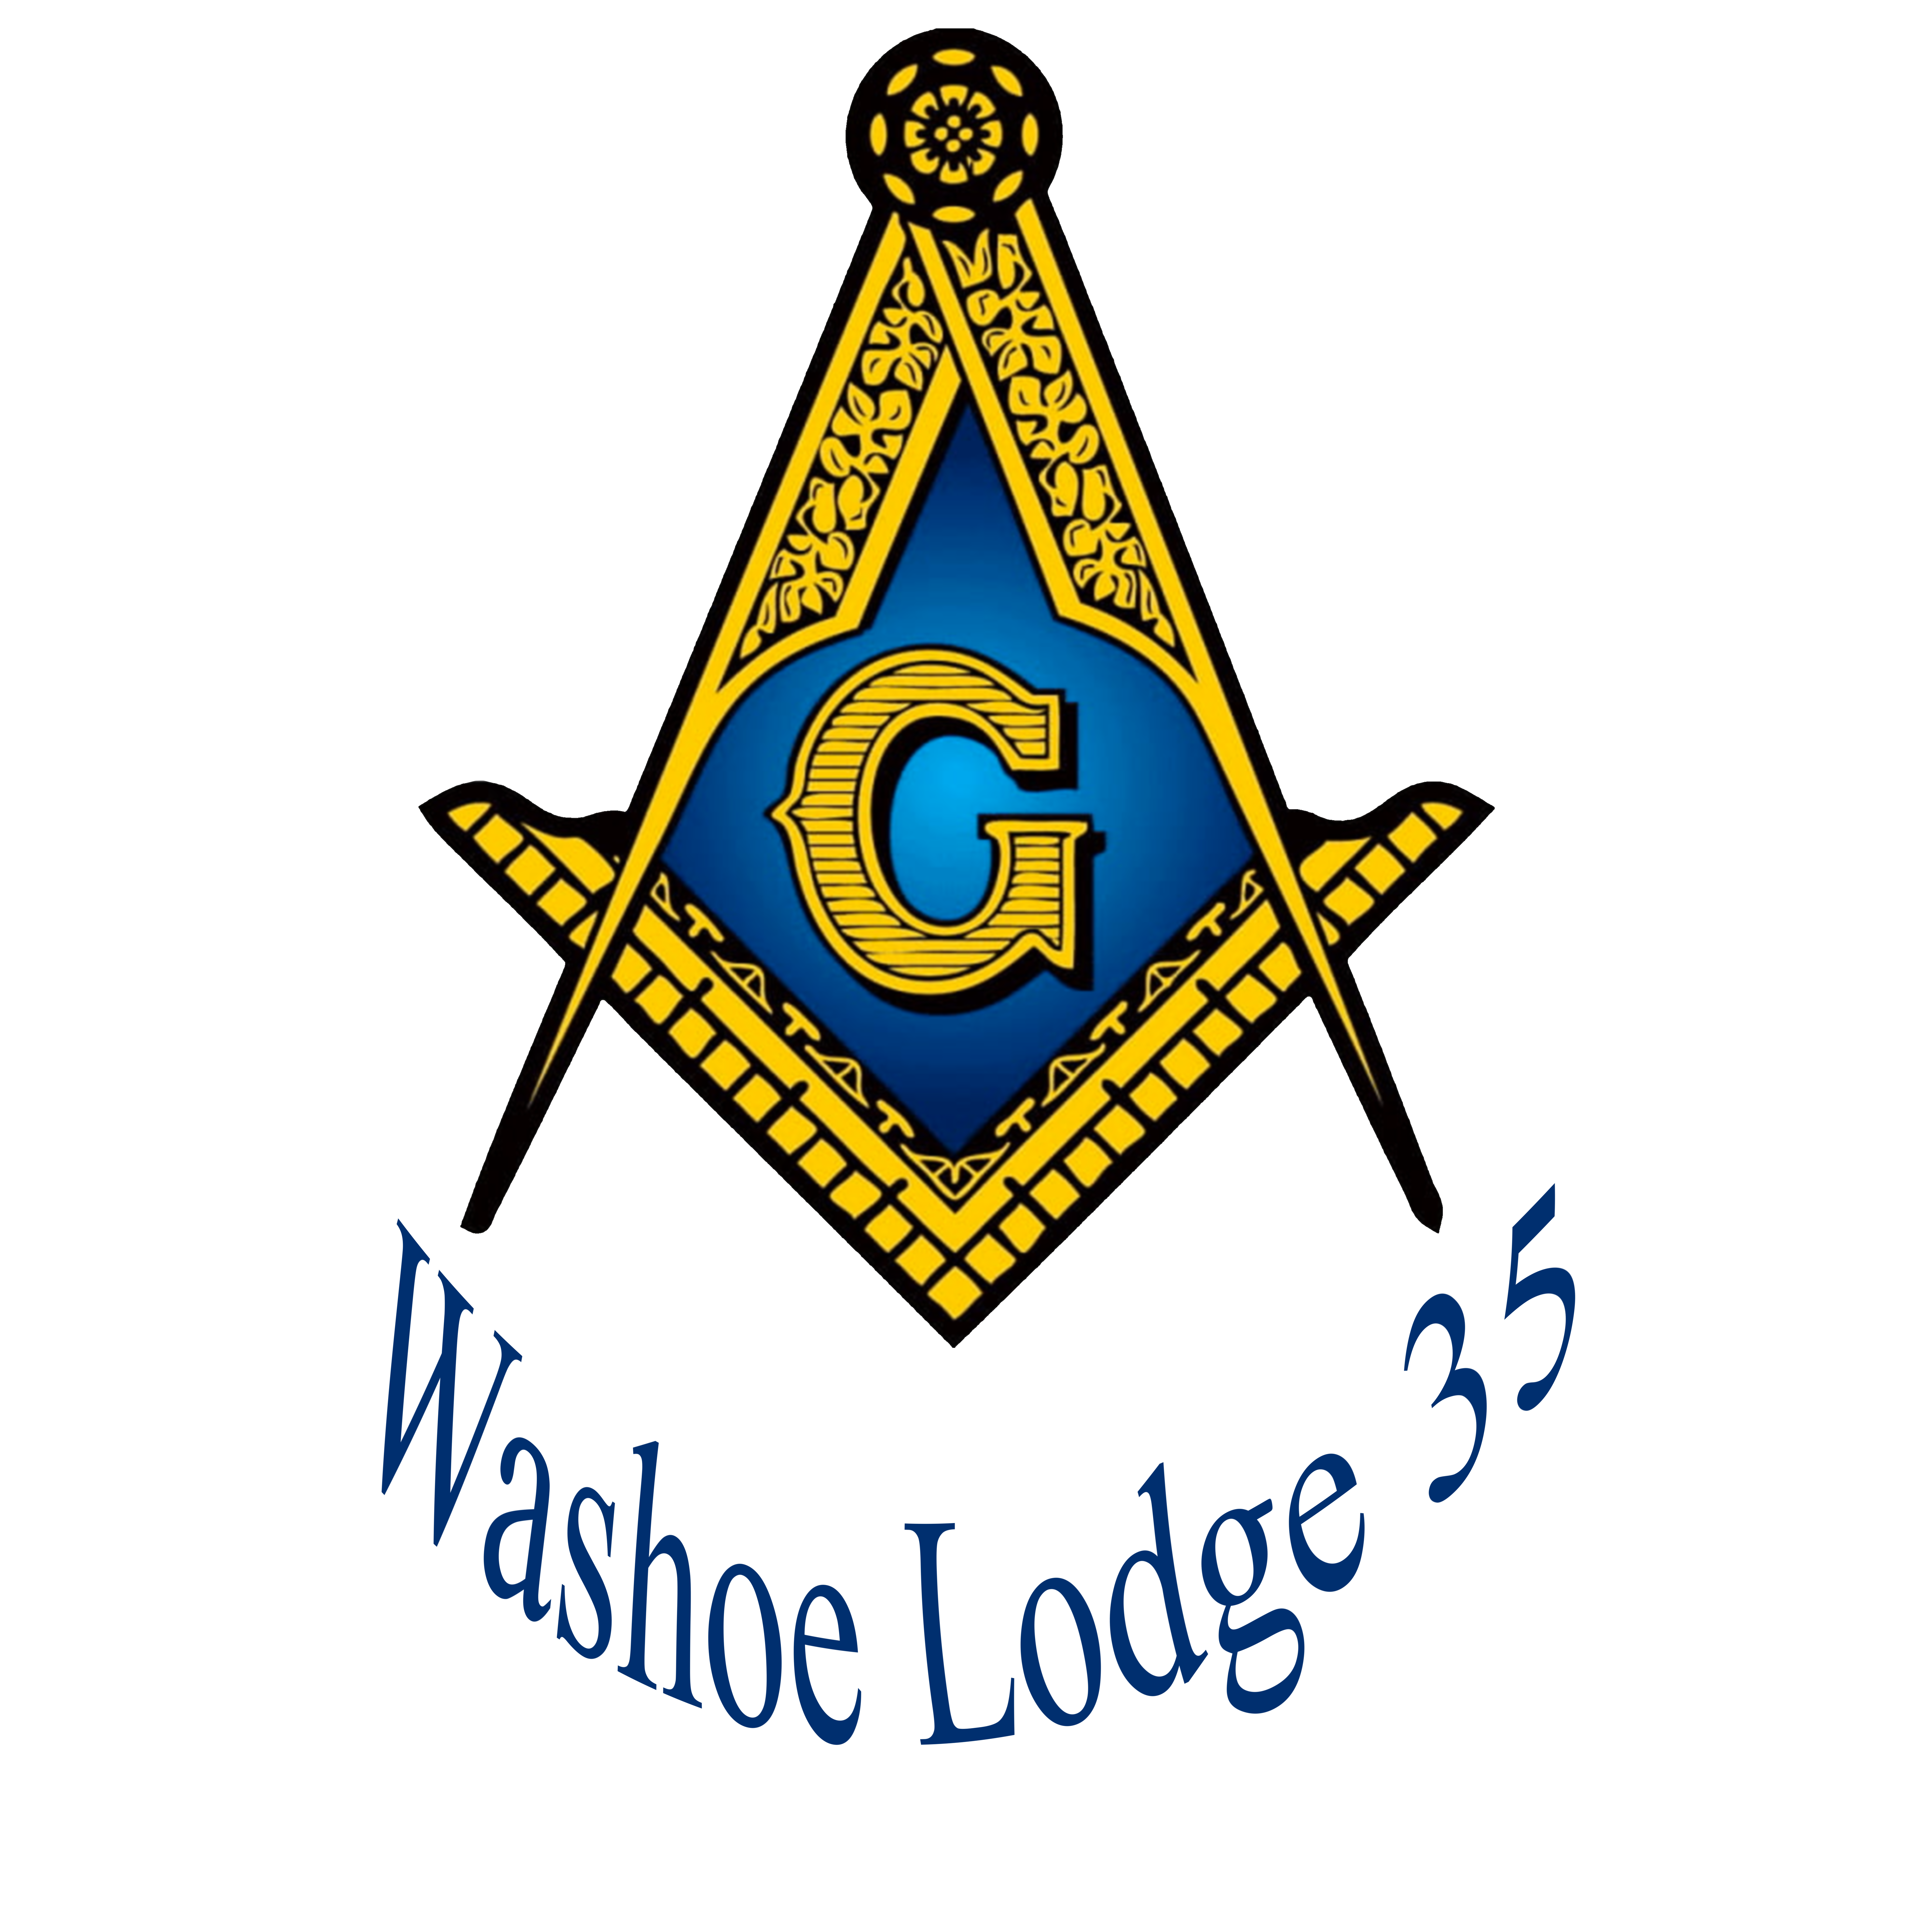 Washoe Lodge 35 F&AM